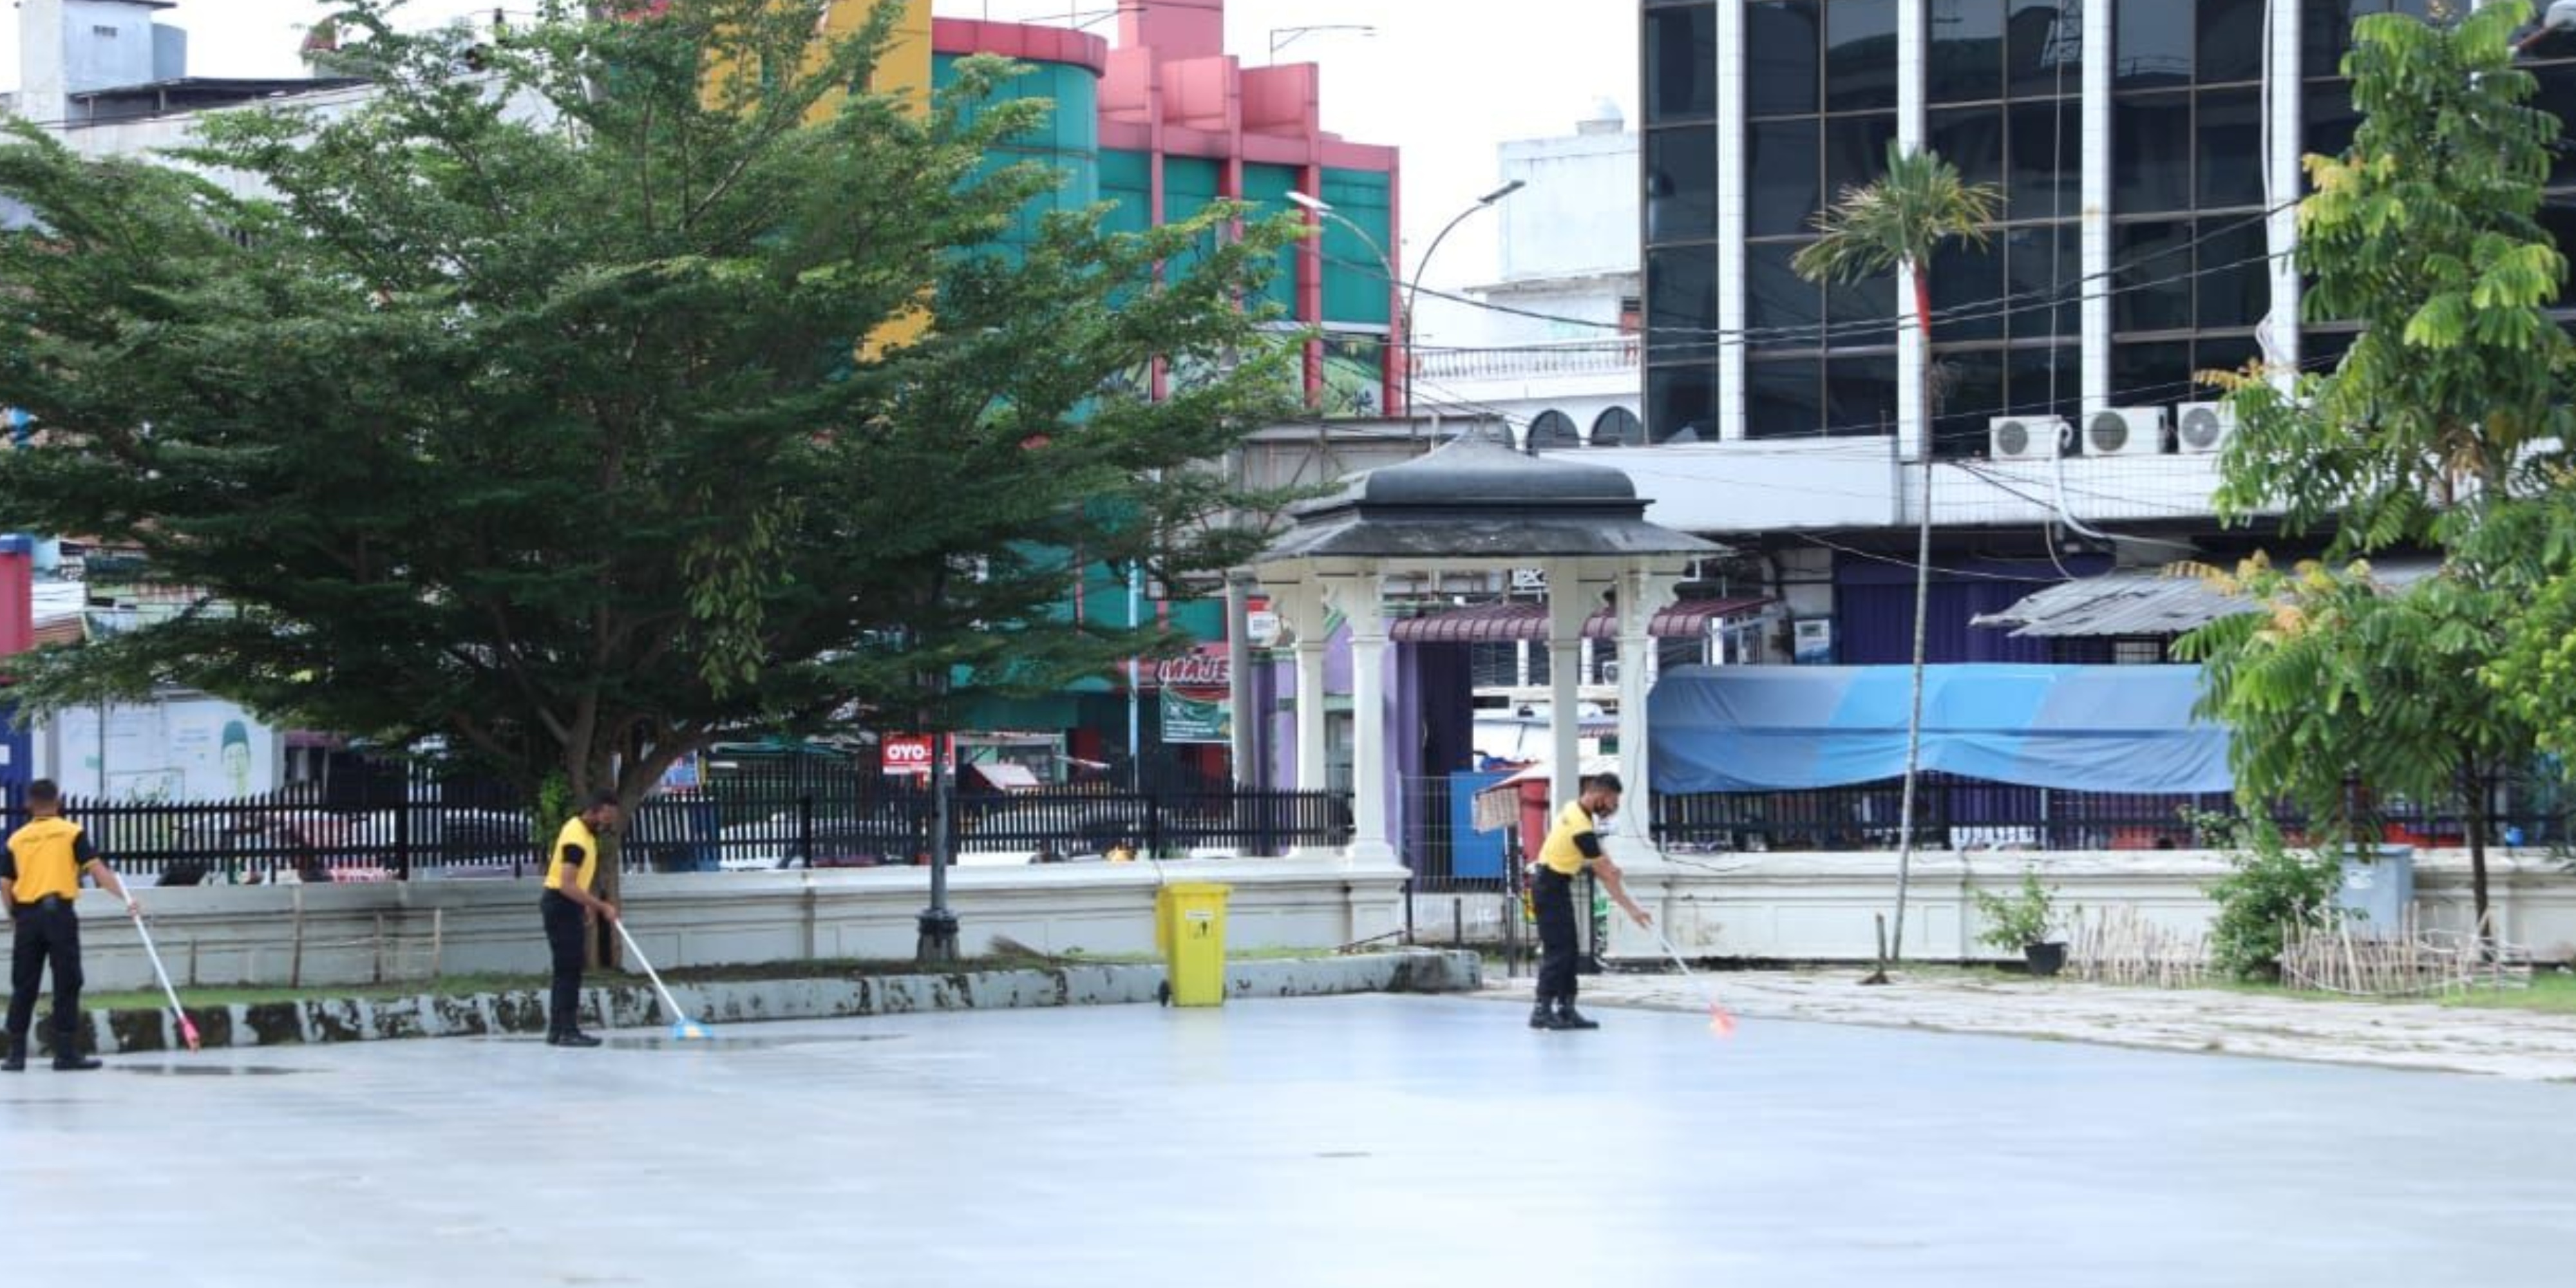 Sambut Hari Bhayangkara, Polda Sumut Bersihkan Rumah Ibadah di Medan